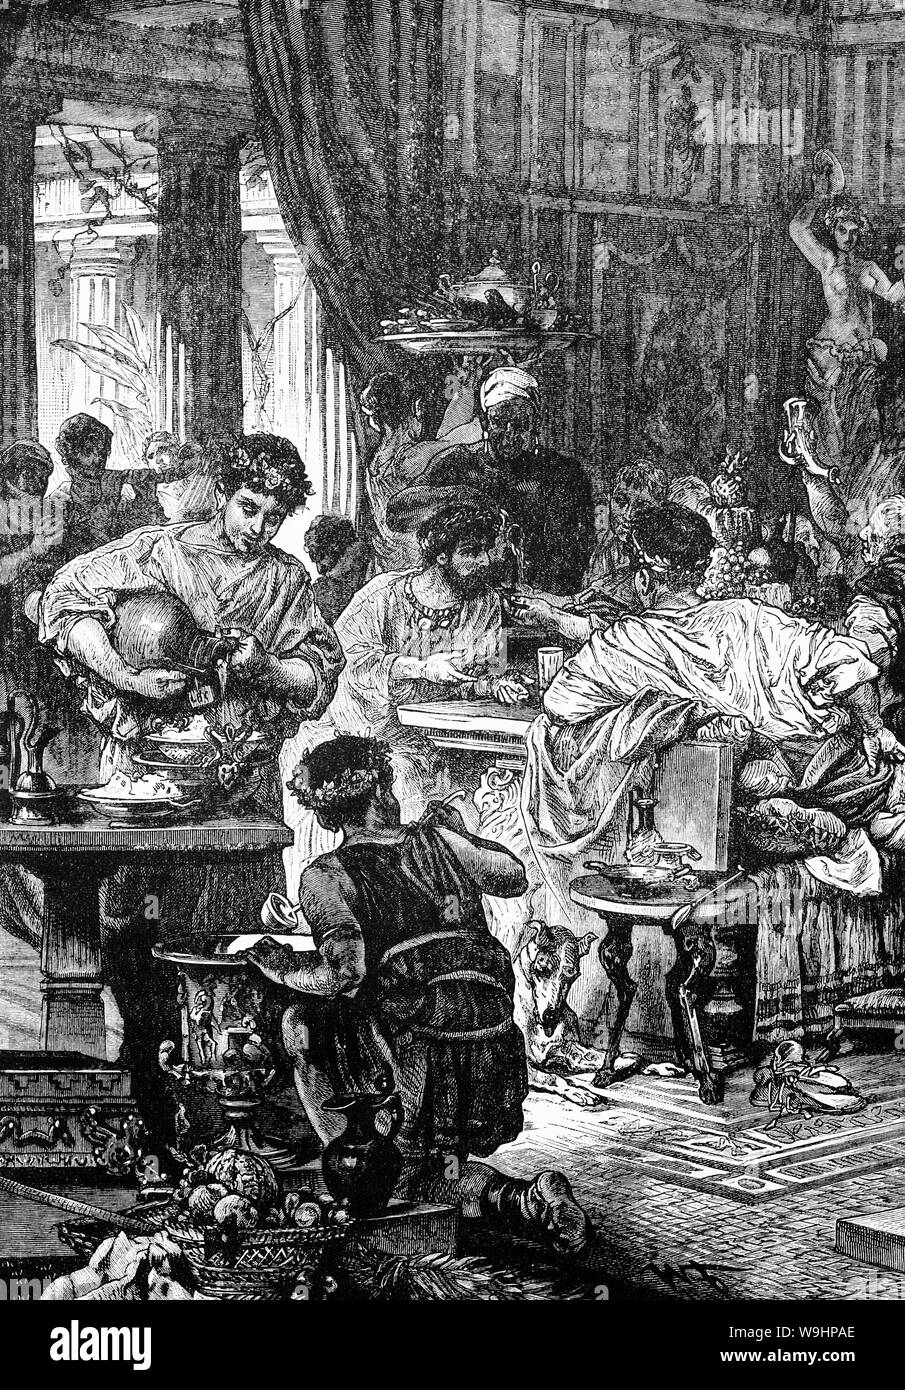 Un banquet romain du 1er siècle de notre ère dans la salle à manger,  également appelé "triclinium" dans la maison de riches Romains appelé  'Domus'. Début dans la soirée, il y avait